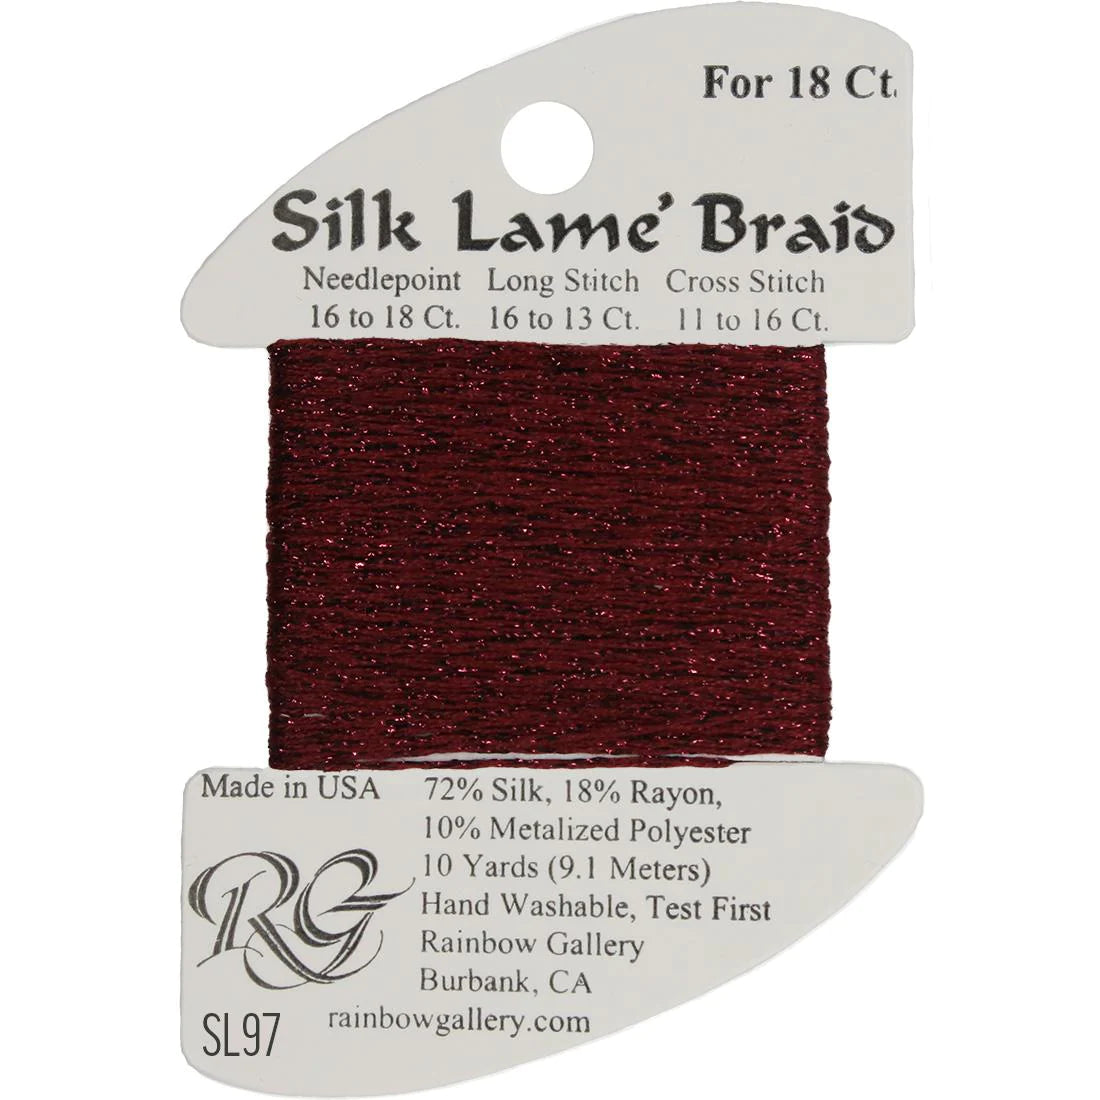 Silk Lame Braid 18 CT (SL01 - SL99)